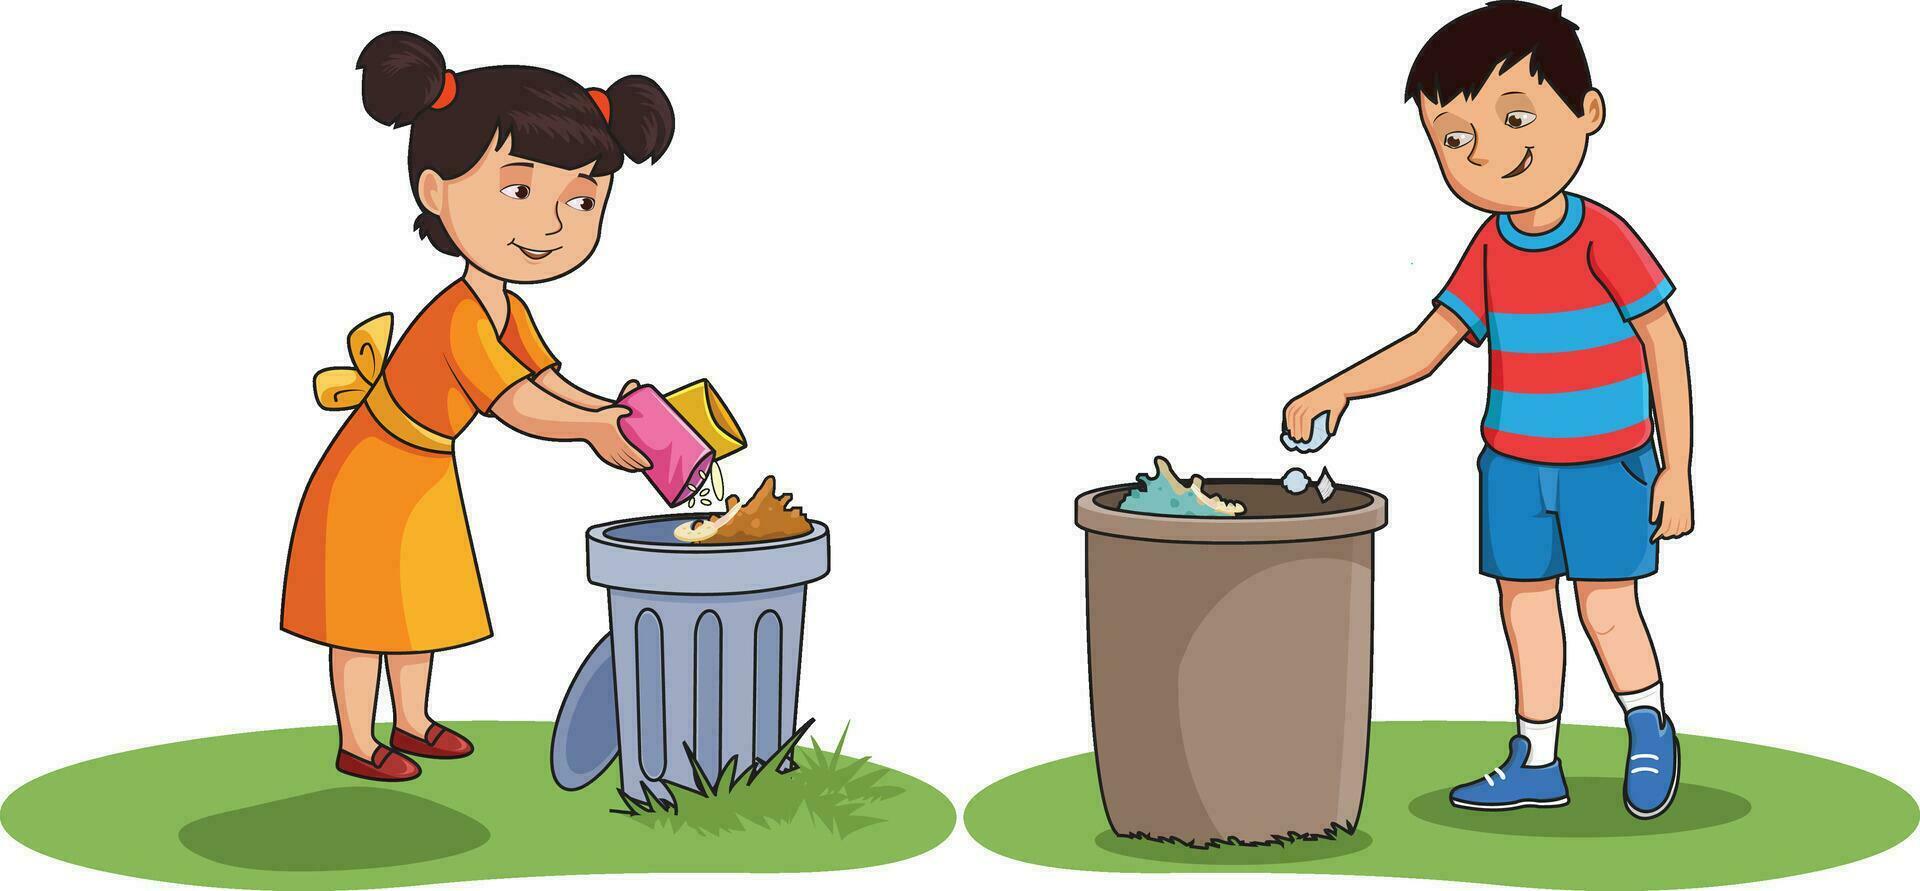 meisje en jongen het werpen vuilnis in vuilnisbakken vector illustratie